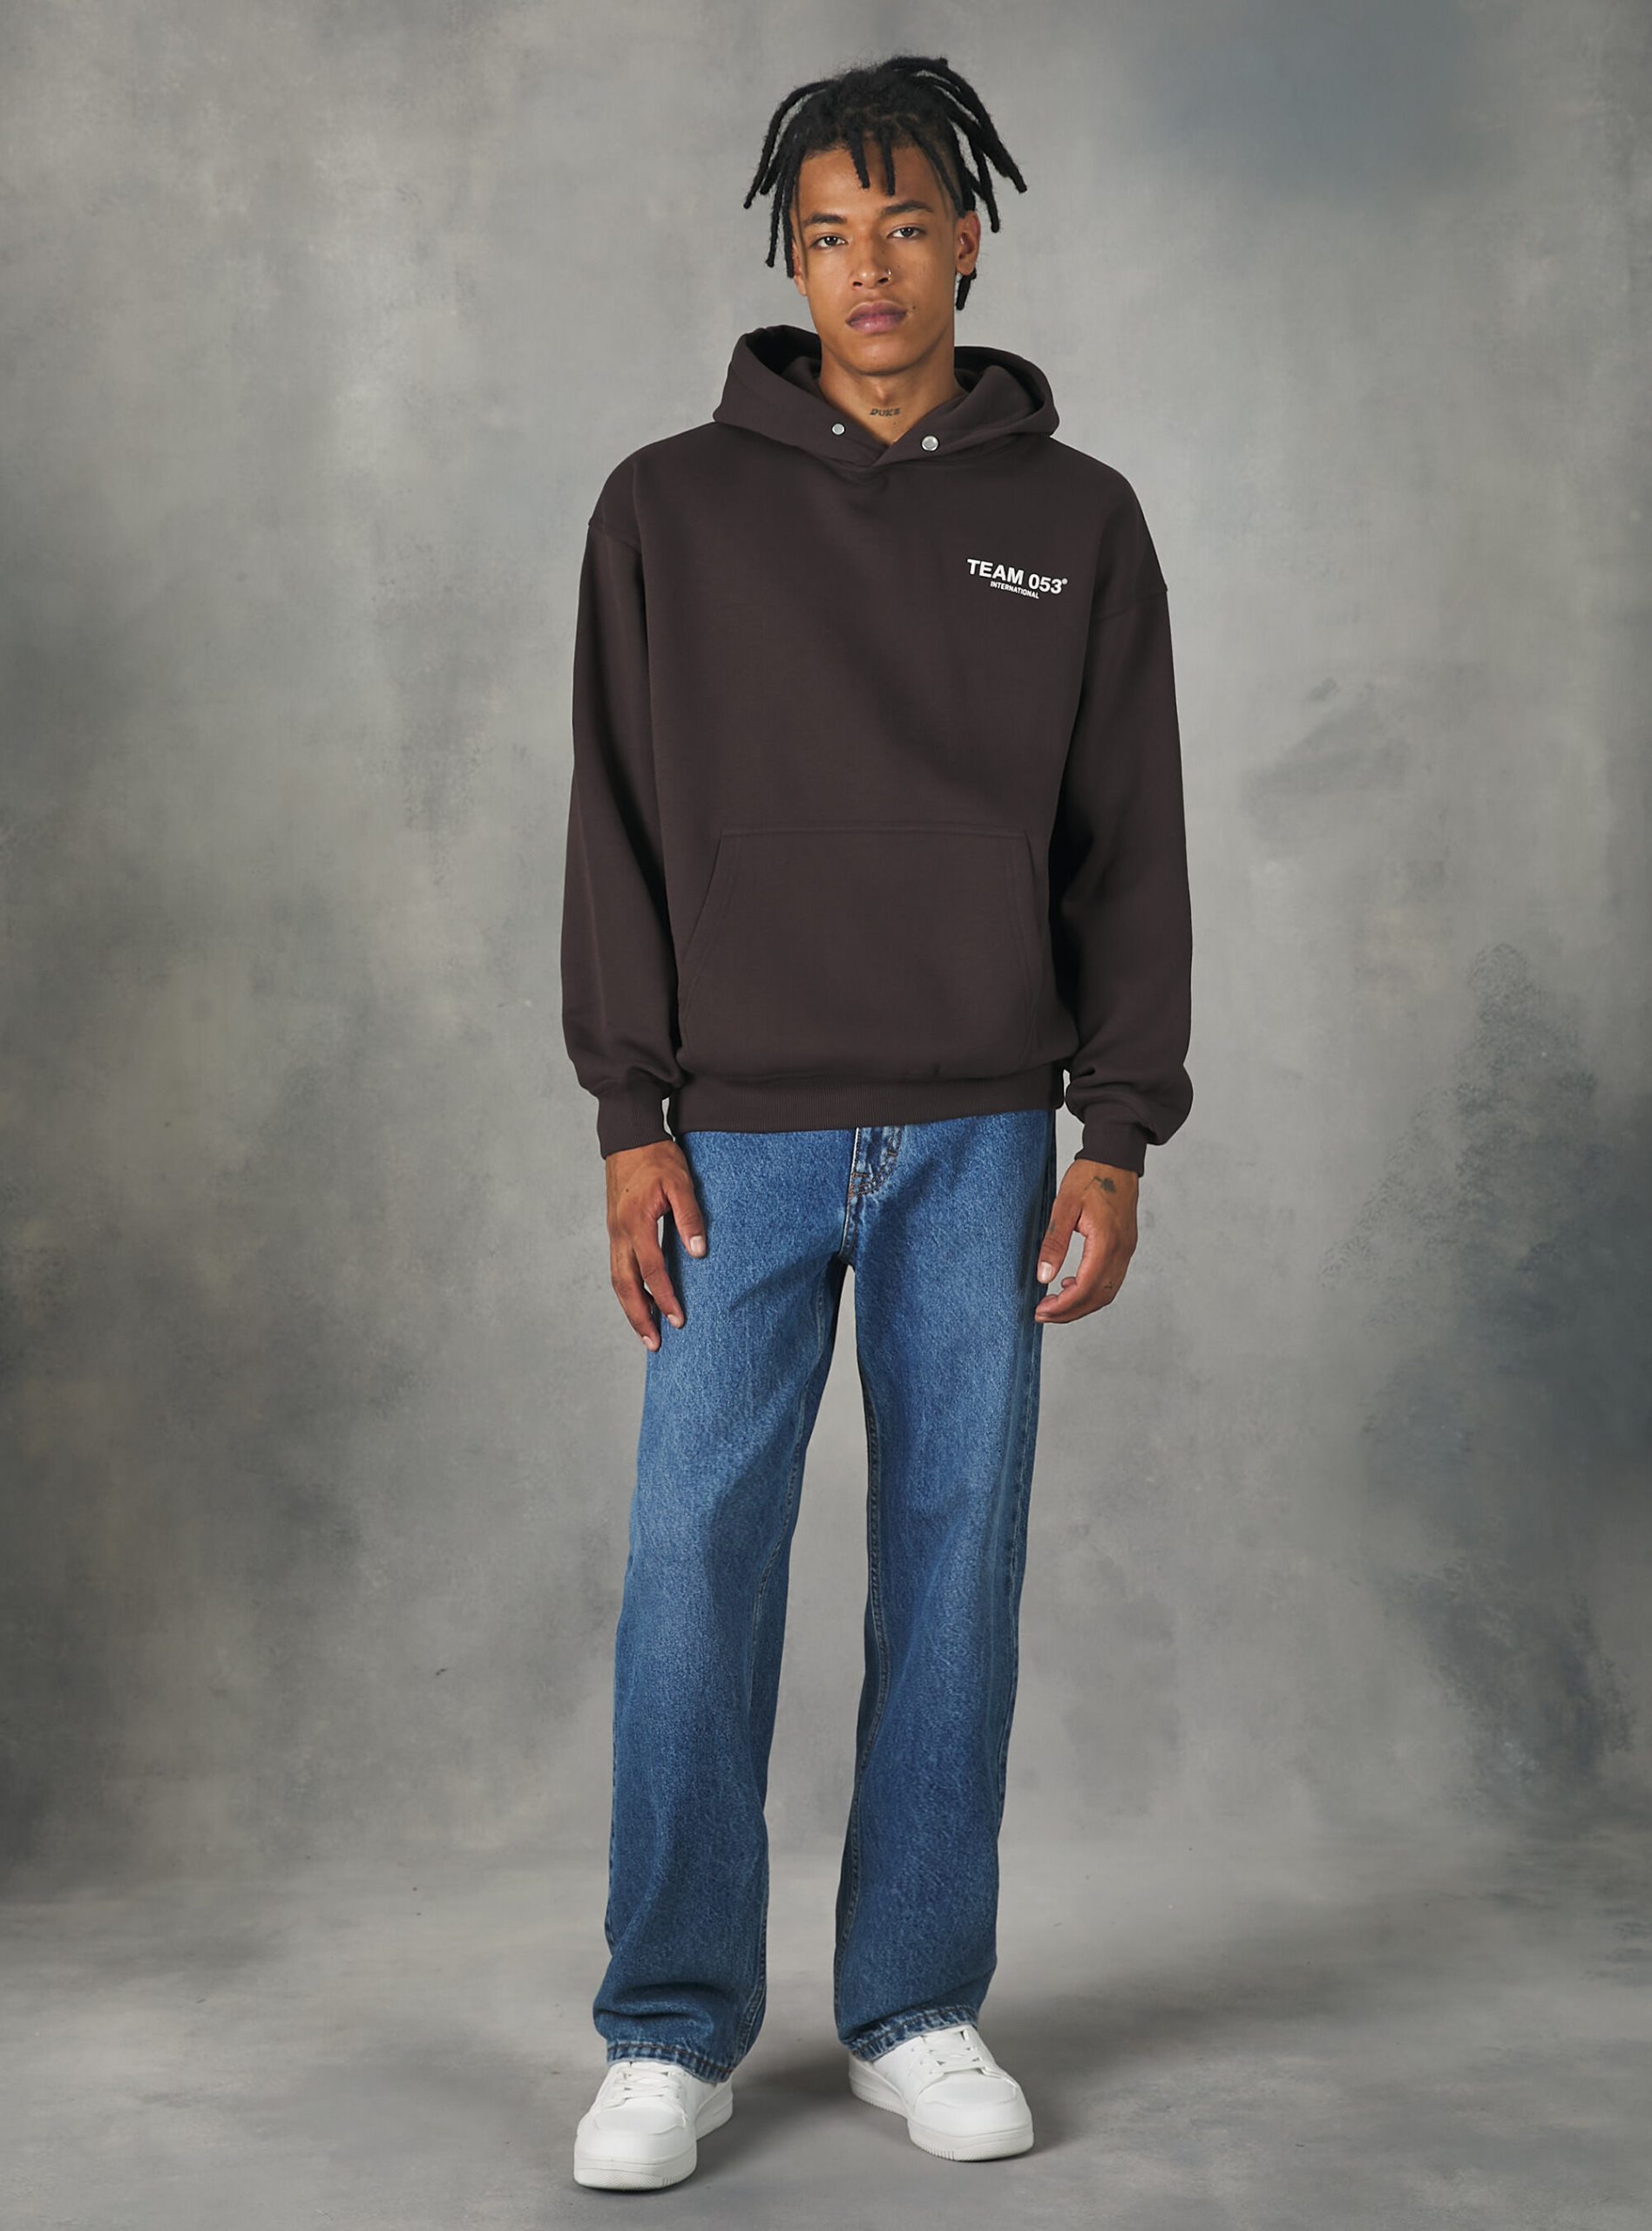 Männer Sicherheit Sweatshirts Br1 Brown Dark Alcott Sweatshirt With Team 053 Print – 1